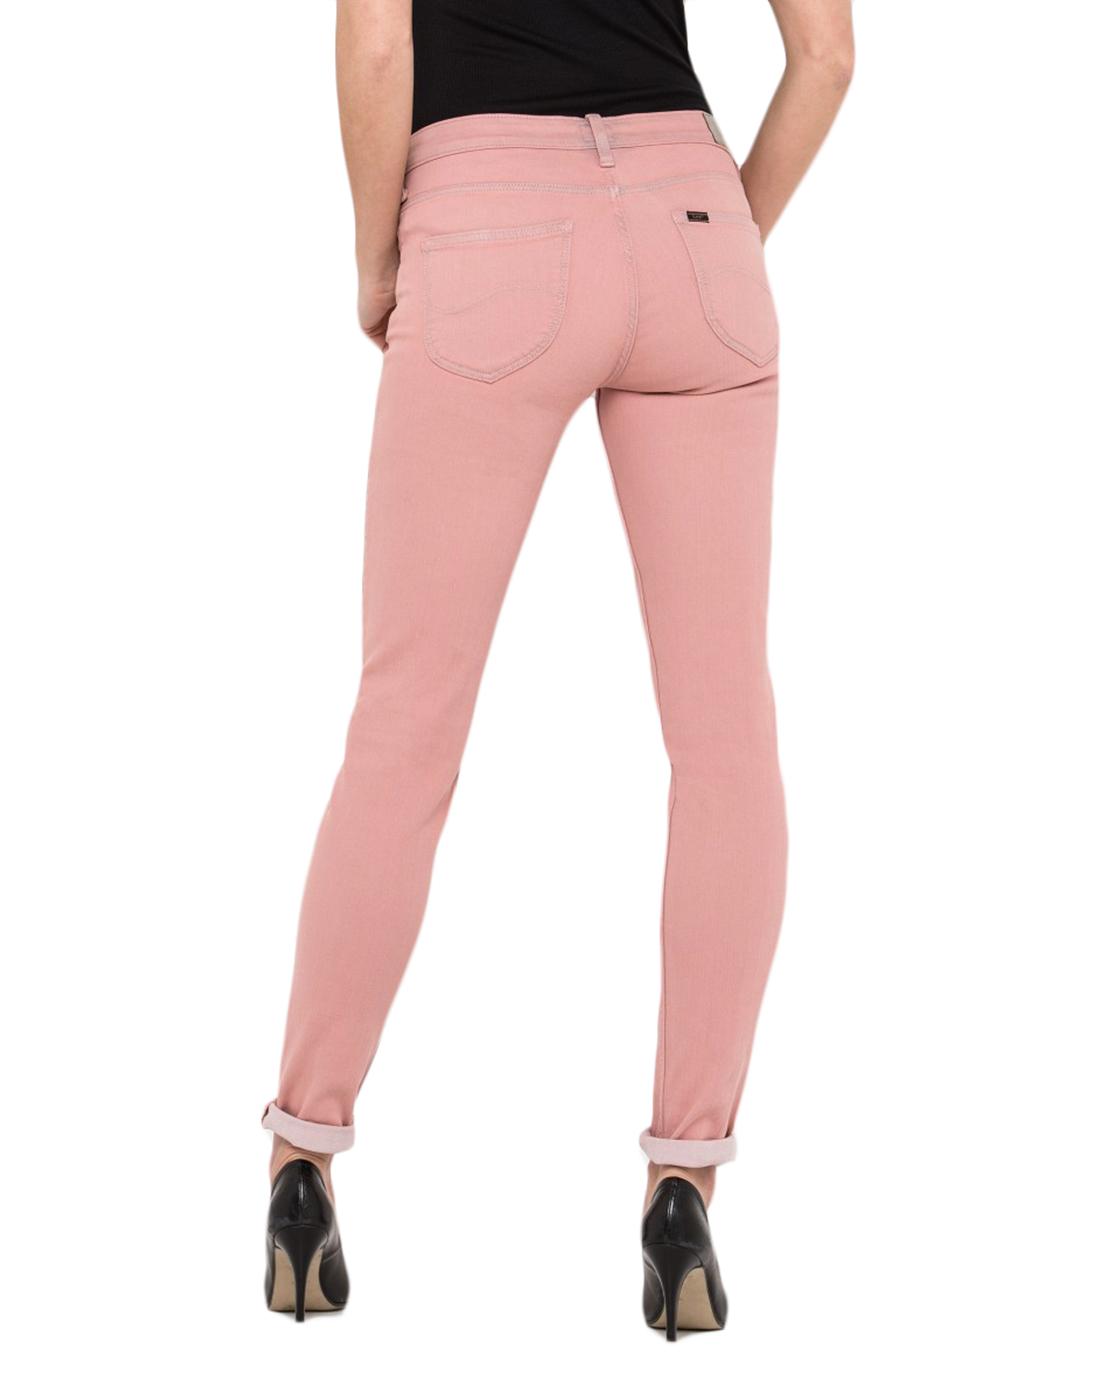 lee jeans pink